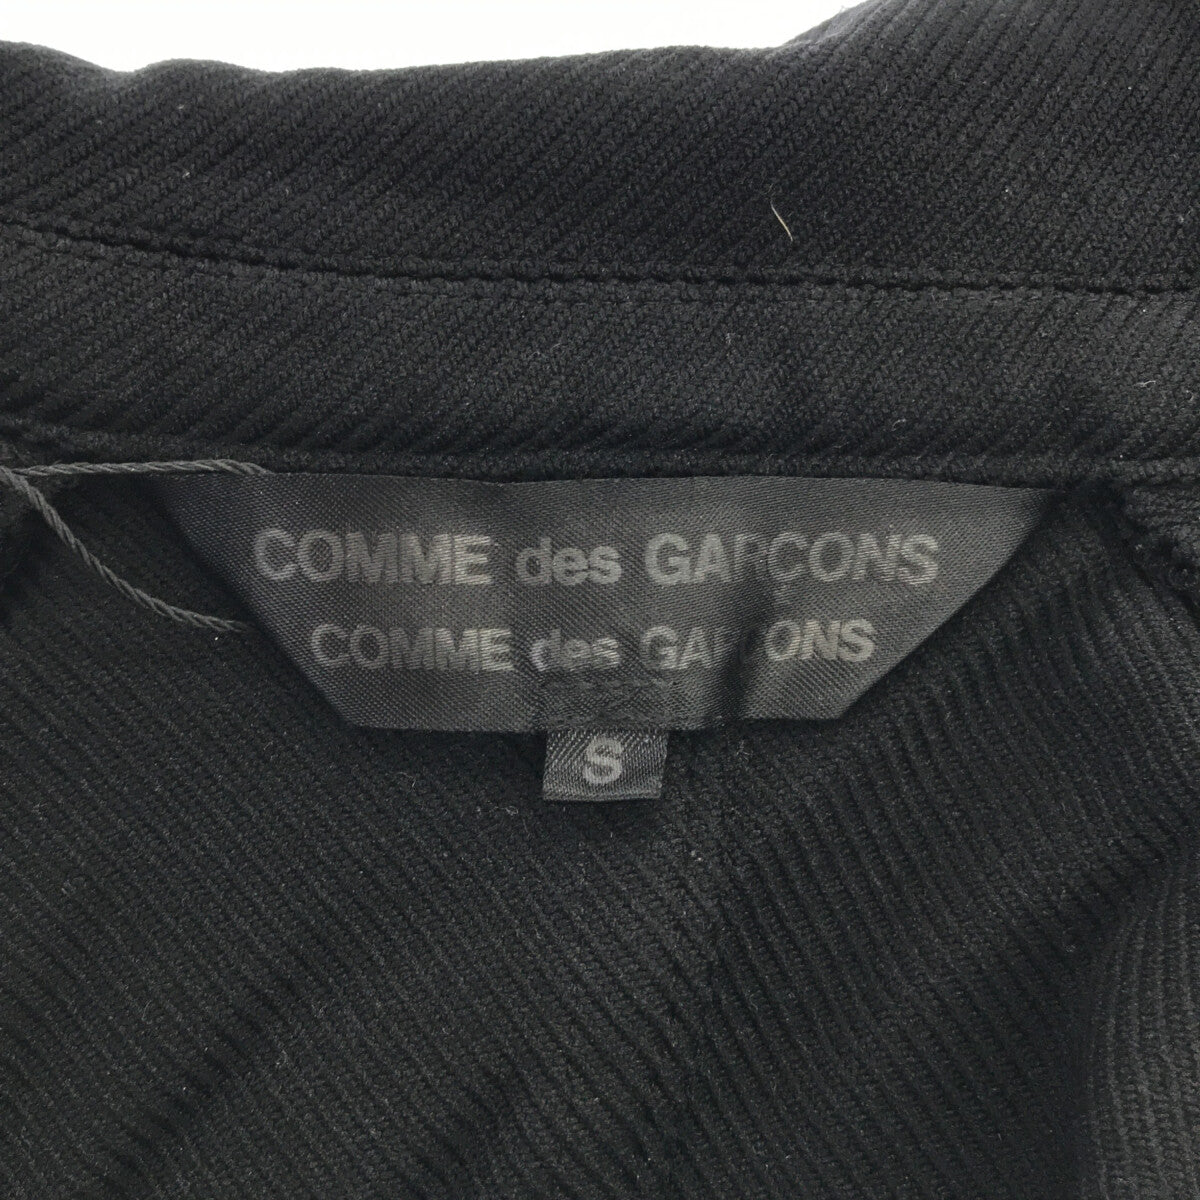 COMME des GARCONS COMME des GARCONS / コムコム | ポリ縮絨 ダブルライダースジャケット | S | ブラック  | レディース